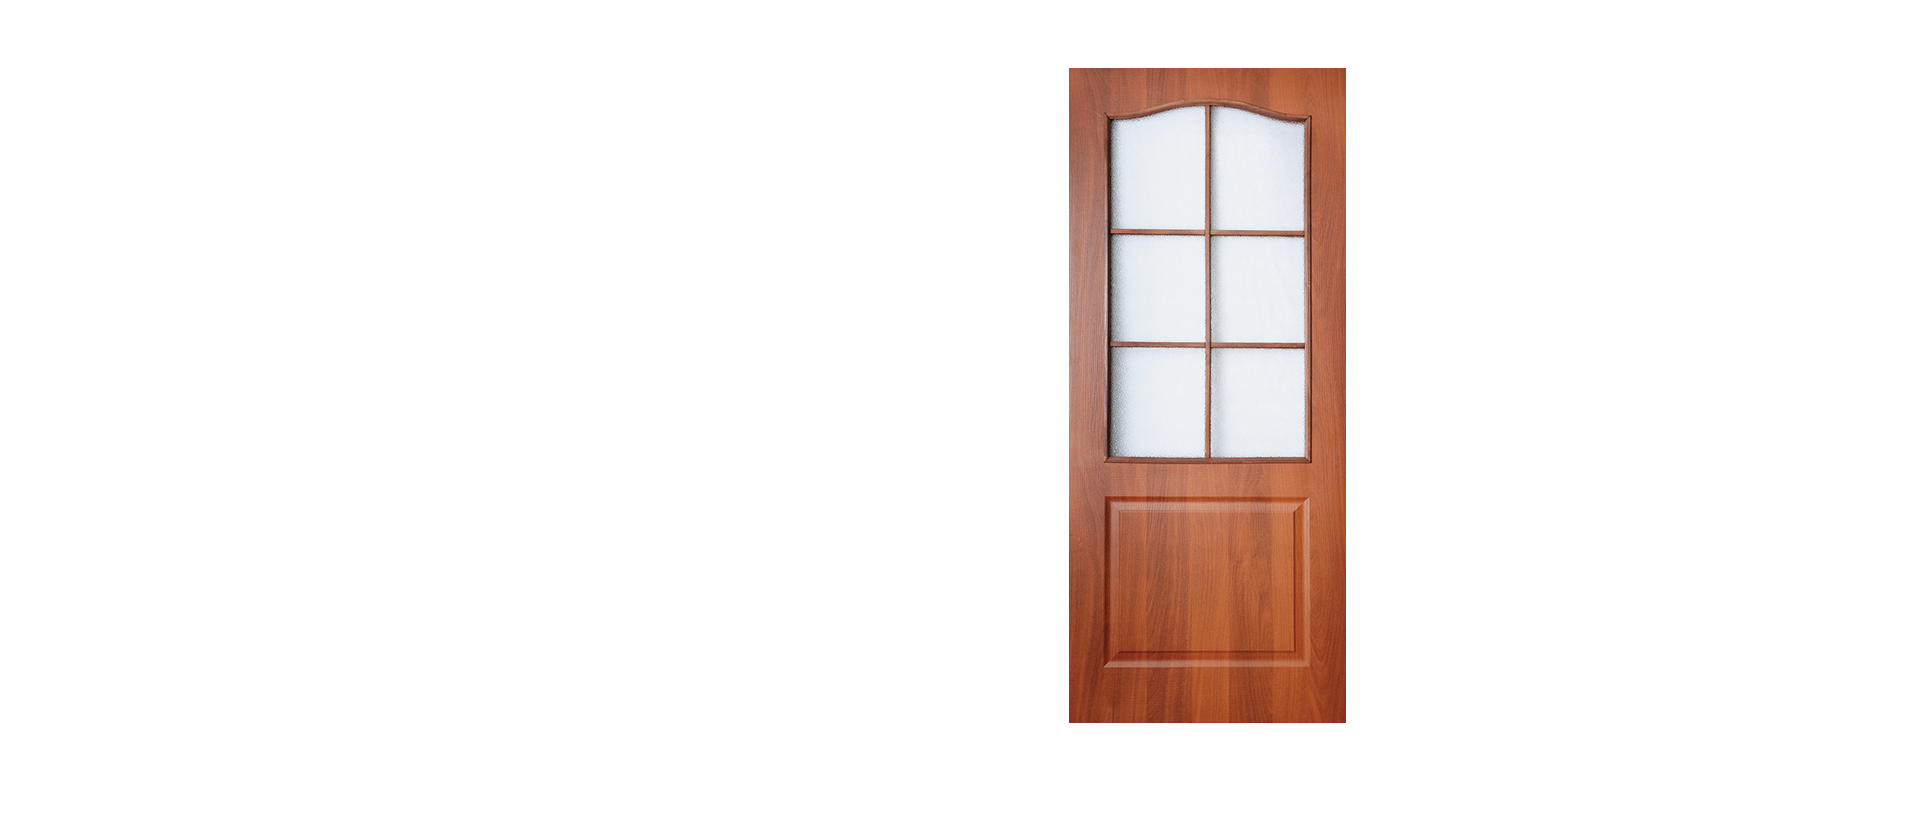 Полотно двери ламинированное глухое со стеклом Терри Classique Итальянский орех 600*2000 мм